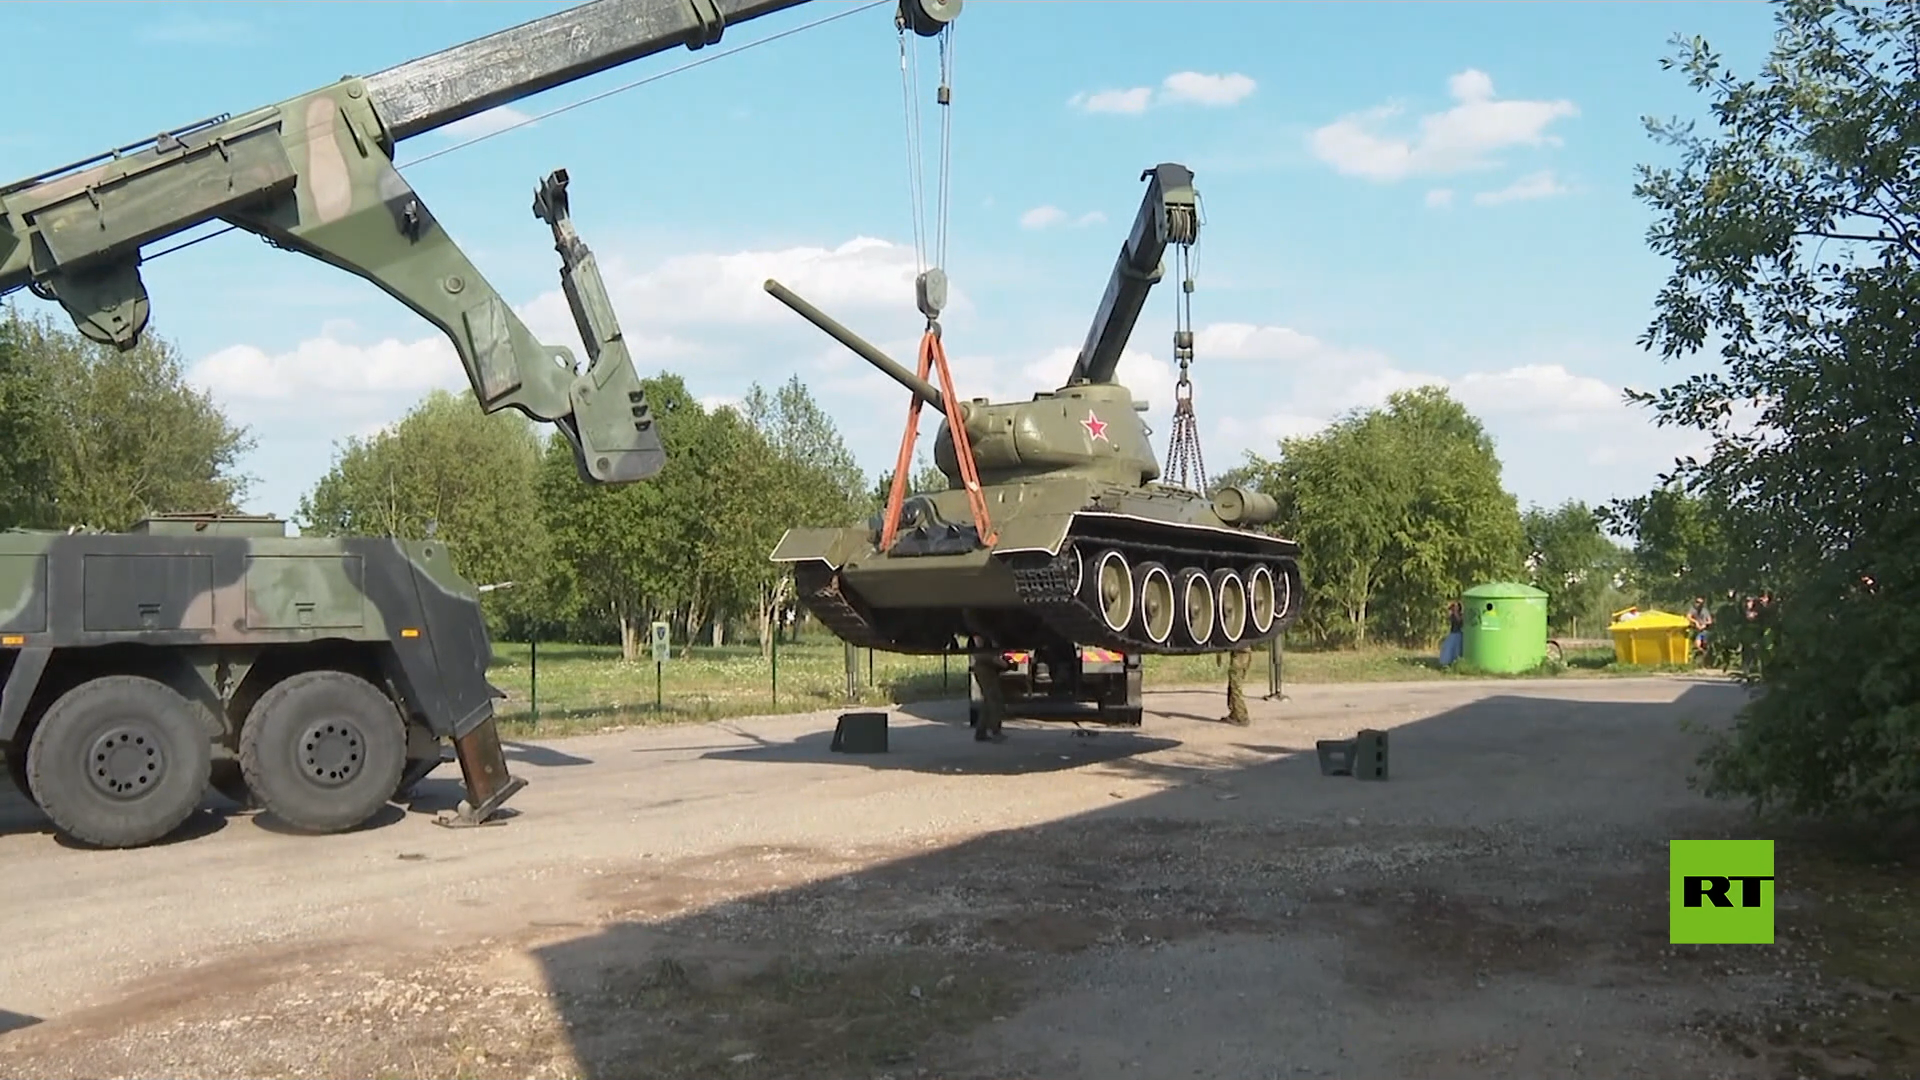 إستونيا تزيل نصبا تذكاريا  لدبابة سوفيتية تي-34